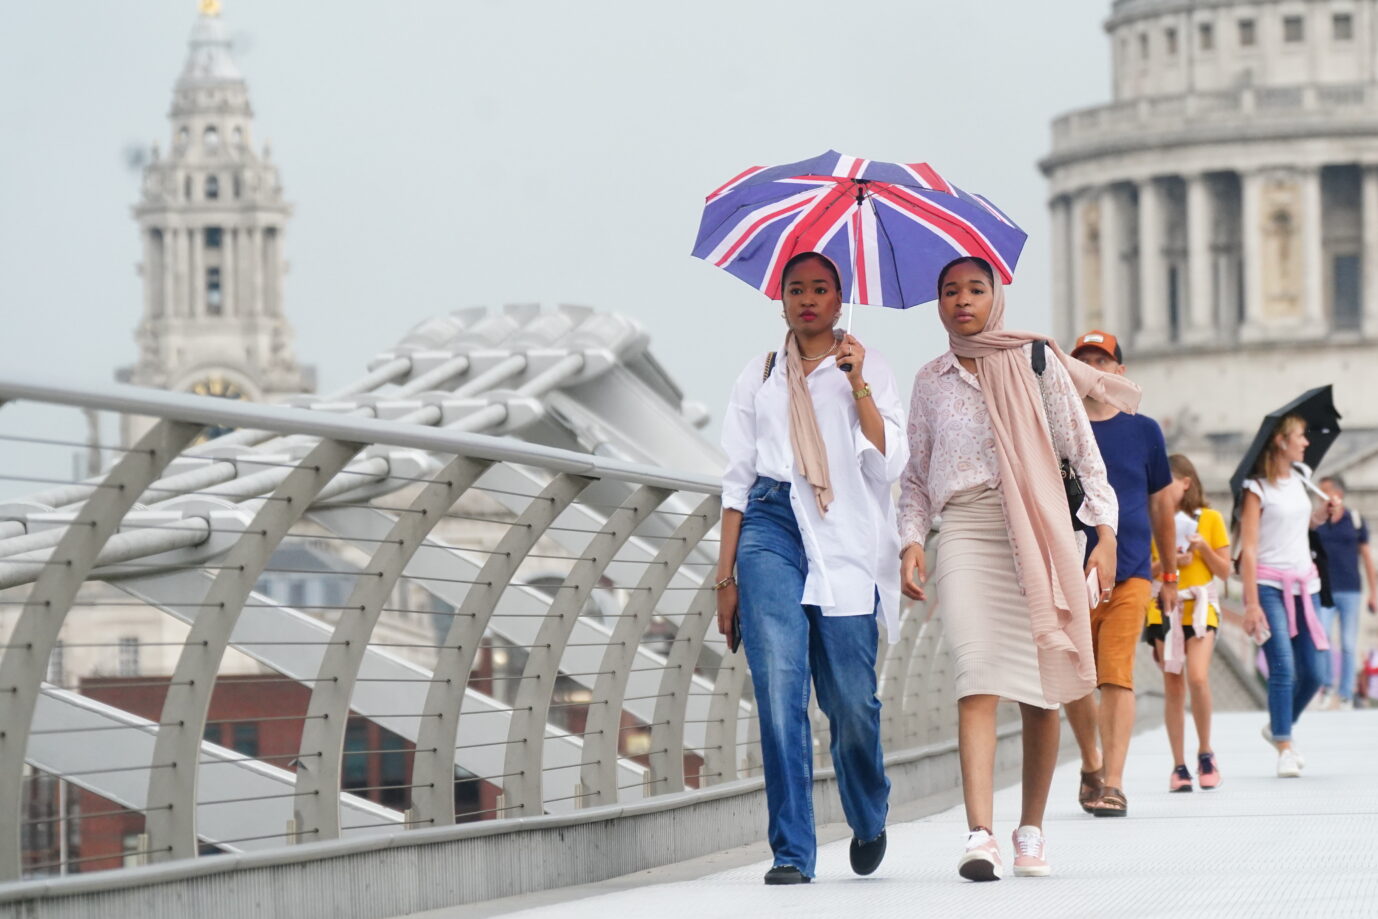 Menschen auf der Millennium Bridge in London: In der englischen Hauptstadt sind Weiße nun in der Minderheit und machen weniger als 50 Prozent der Bevölkerung aus